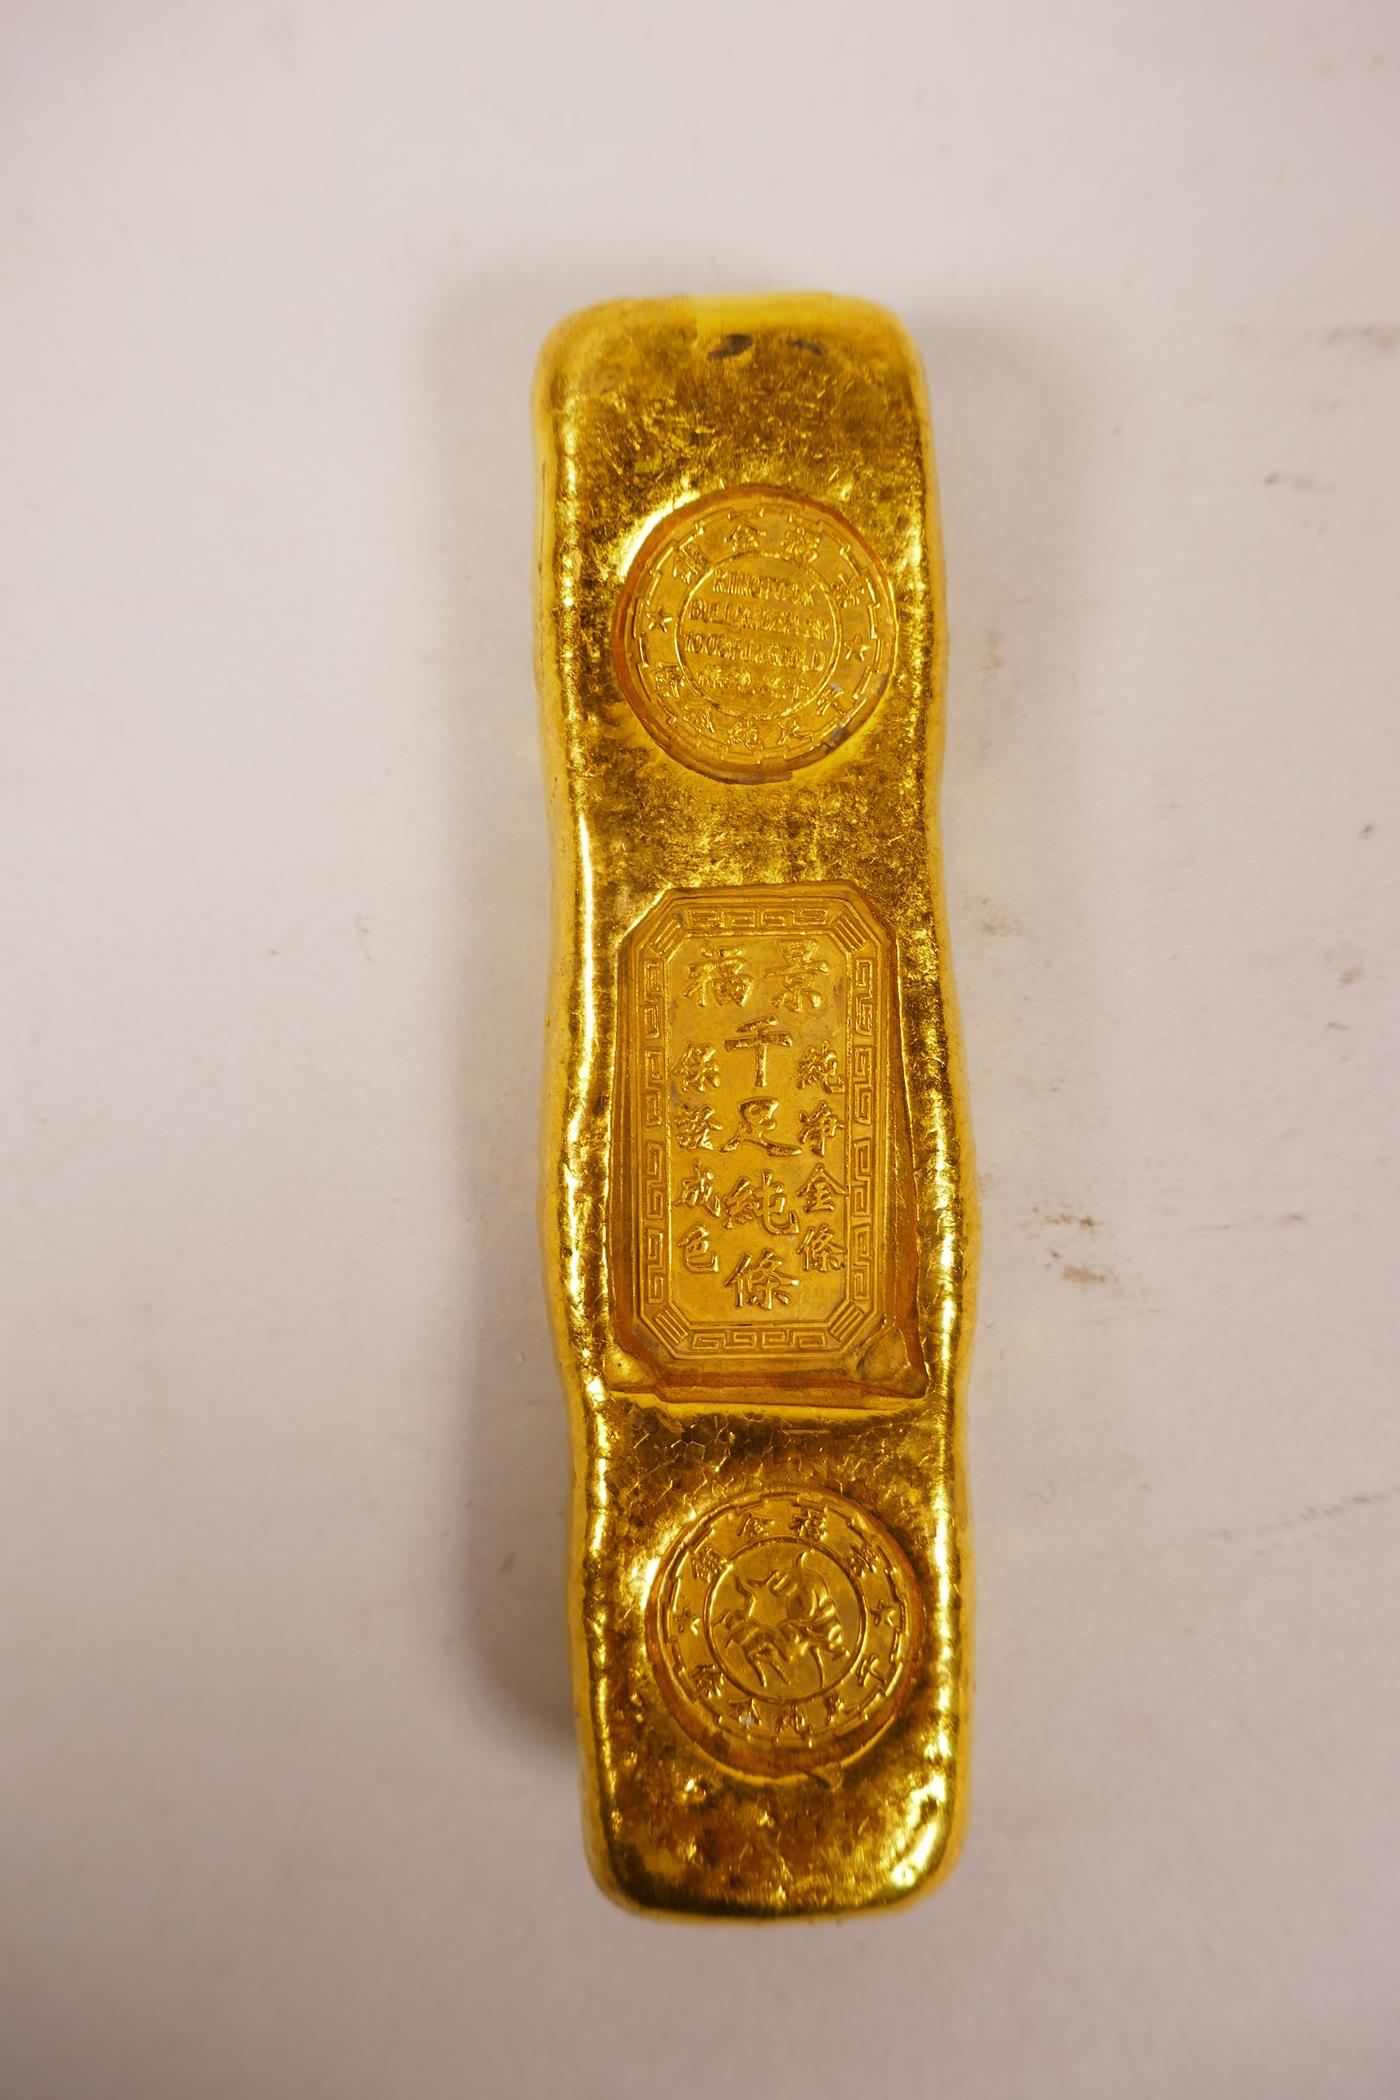 A Chinese gilt white metal trade token/ingot, 4" long, 190 grams